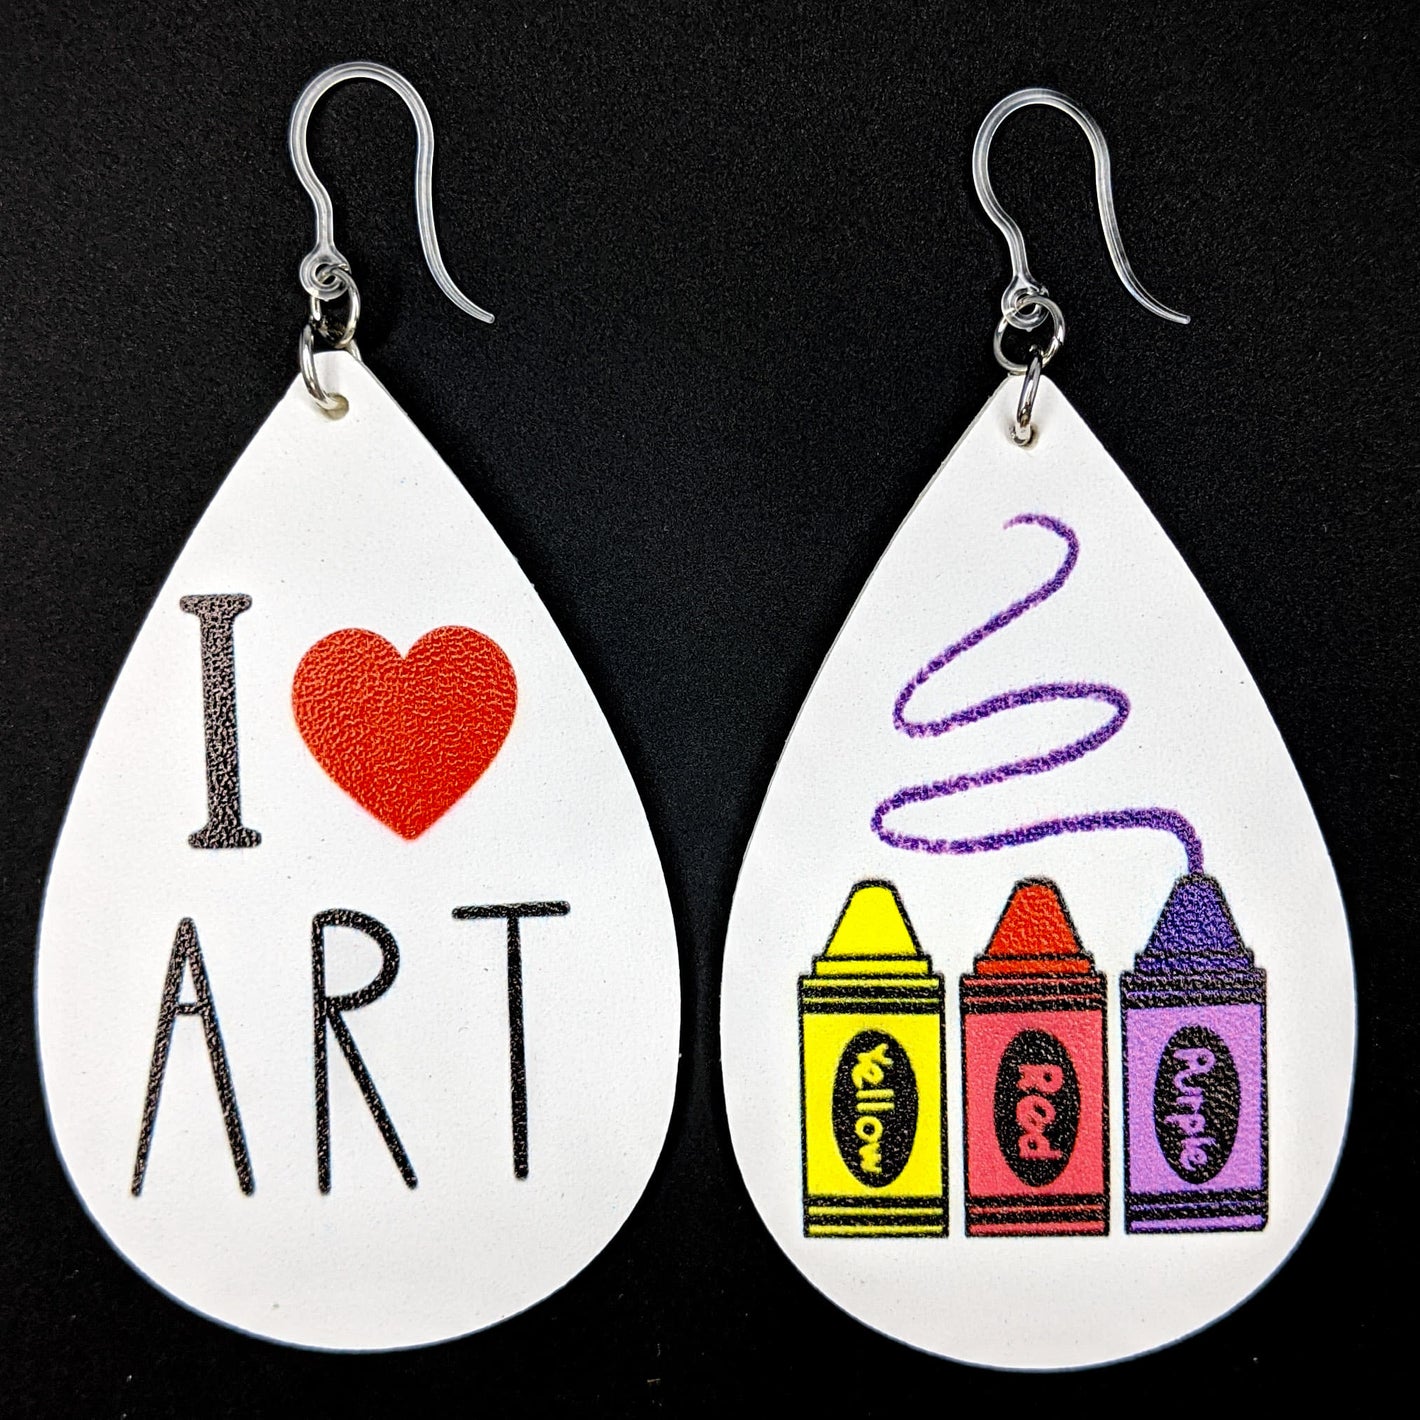 I Love Art Earrings (Teardrop Dangles) - Crayons